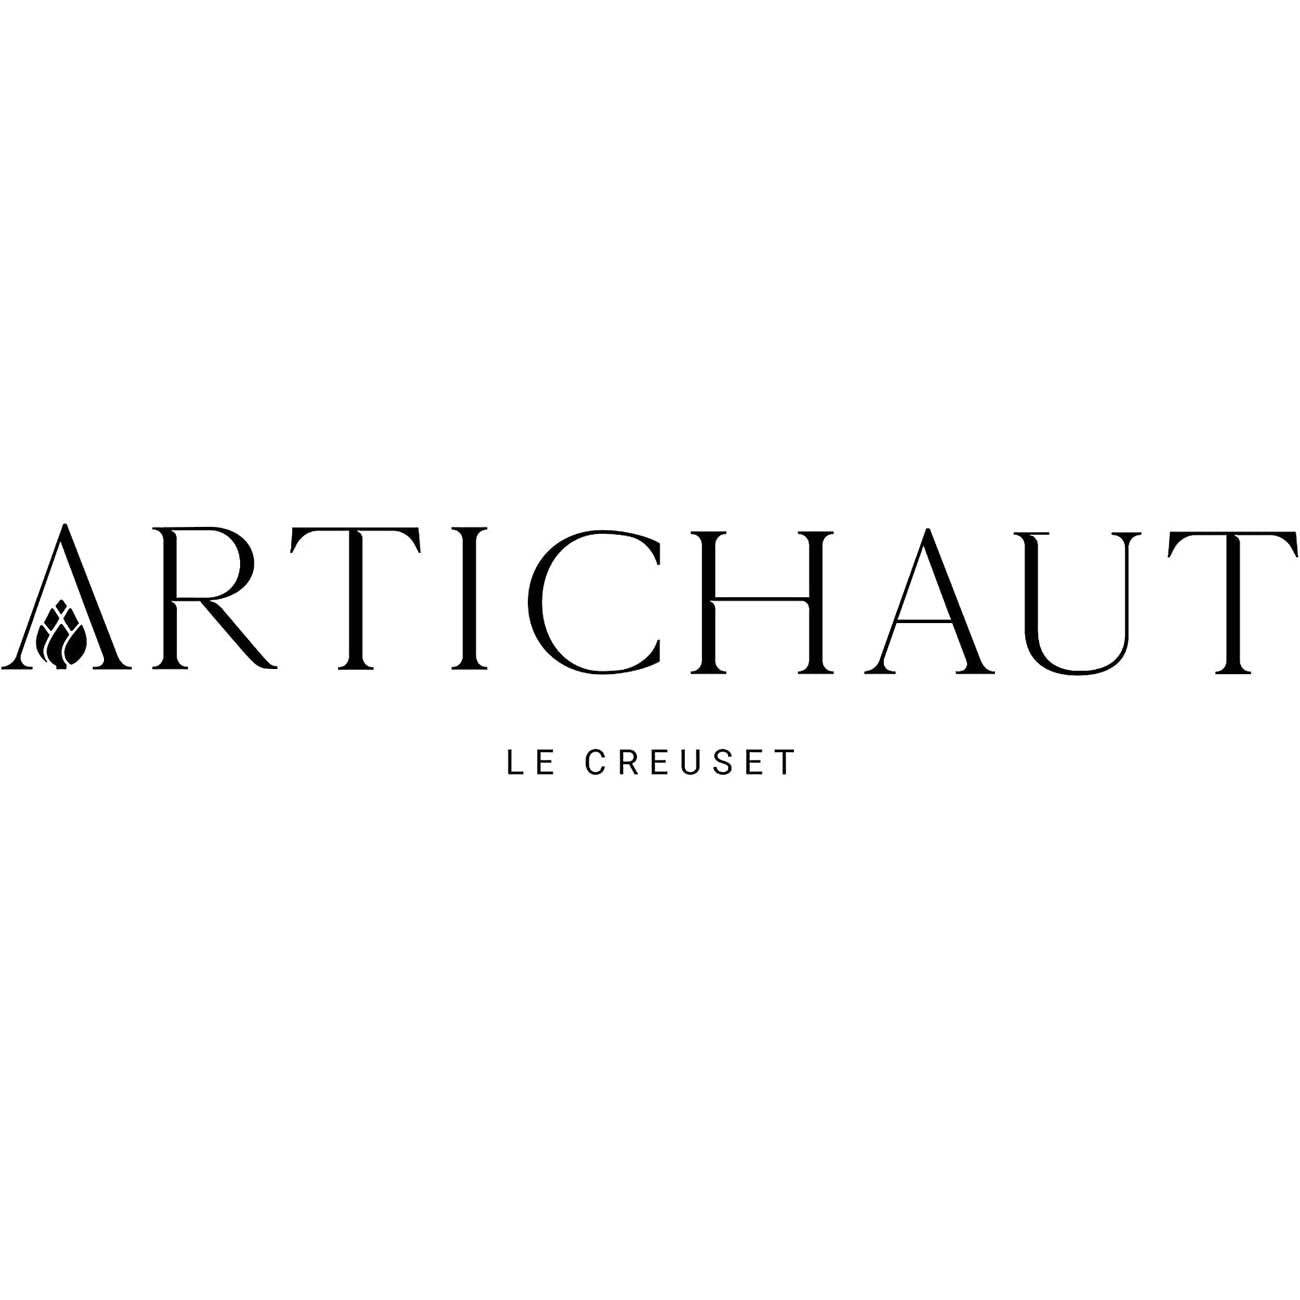 Le Creuset 6.75 qt. Signature Oval Dutch Oven - Artichaut